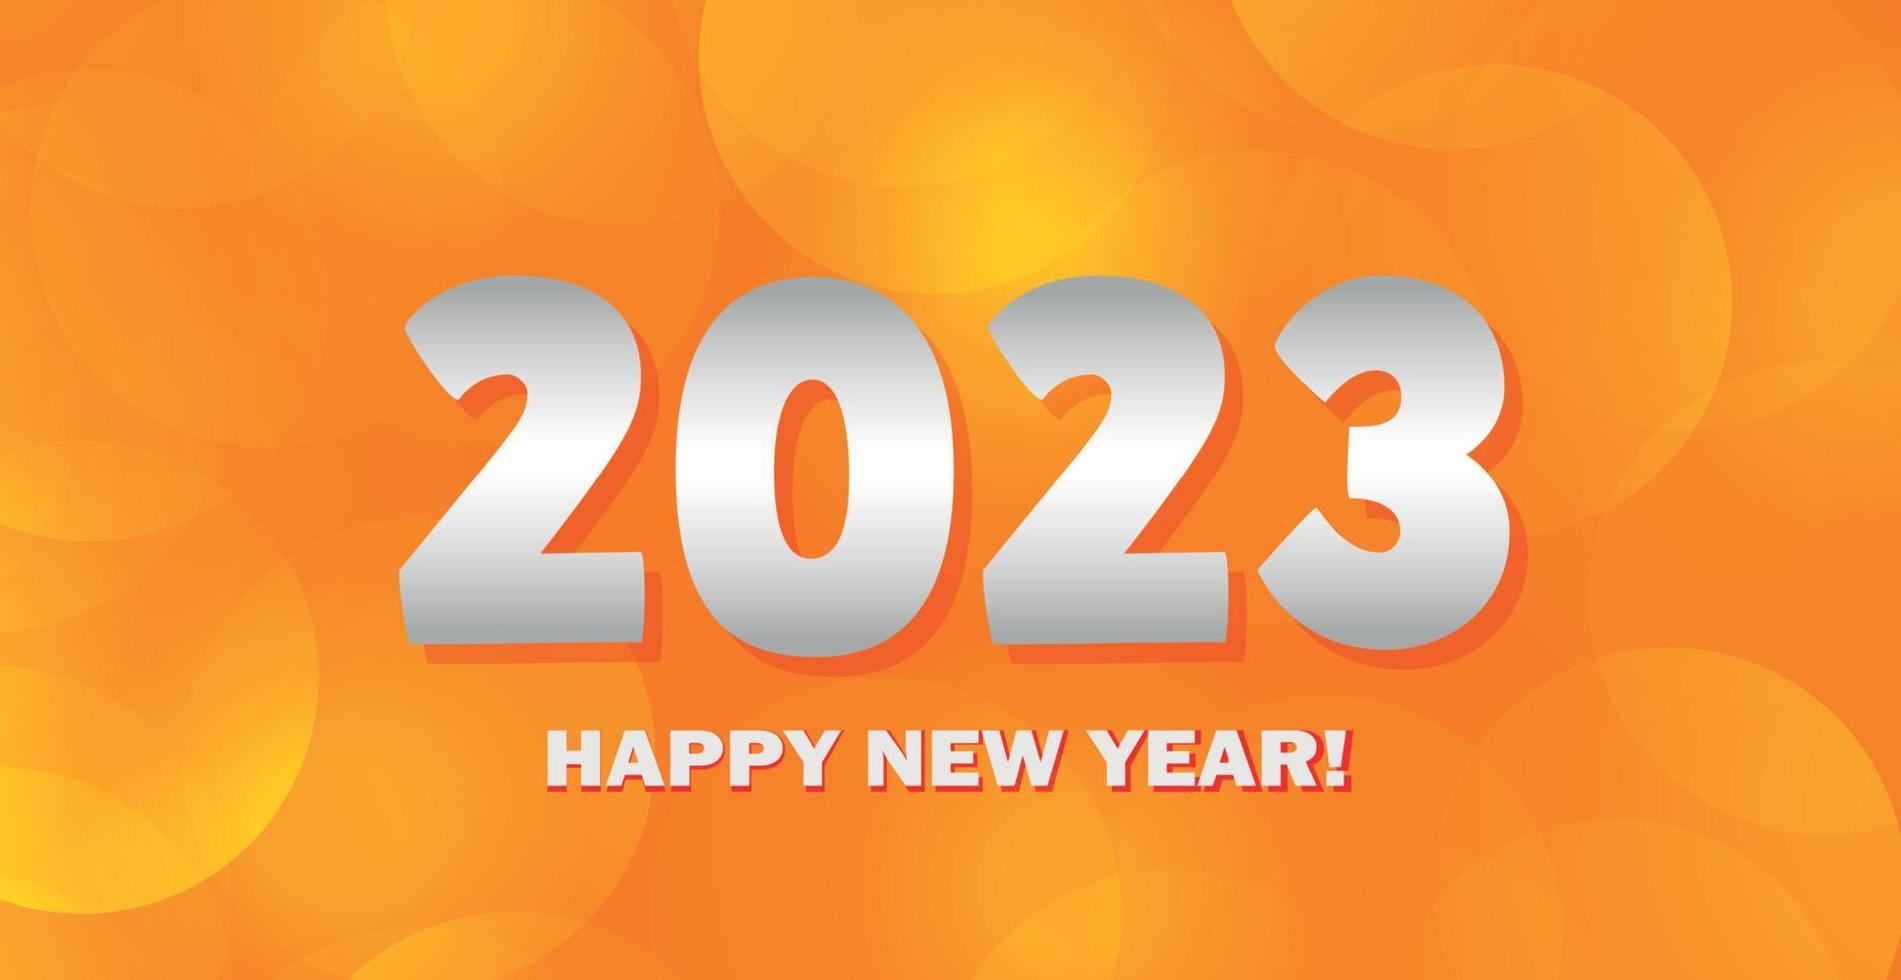 feliz natal e feliz ano novo 2023, cartão postal de fundo bokeh brilhante, modelo web - vetor